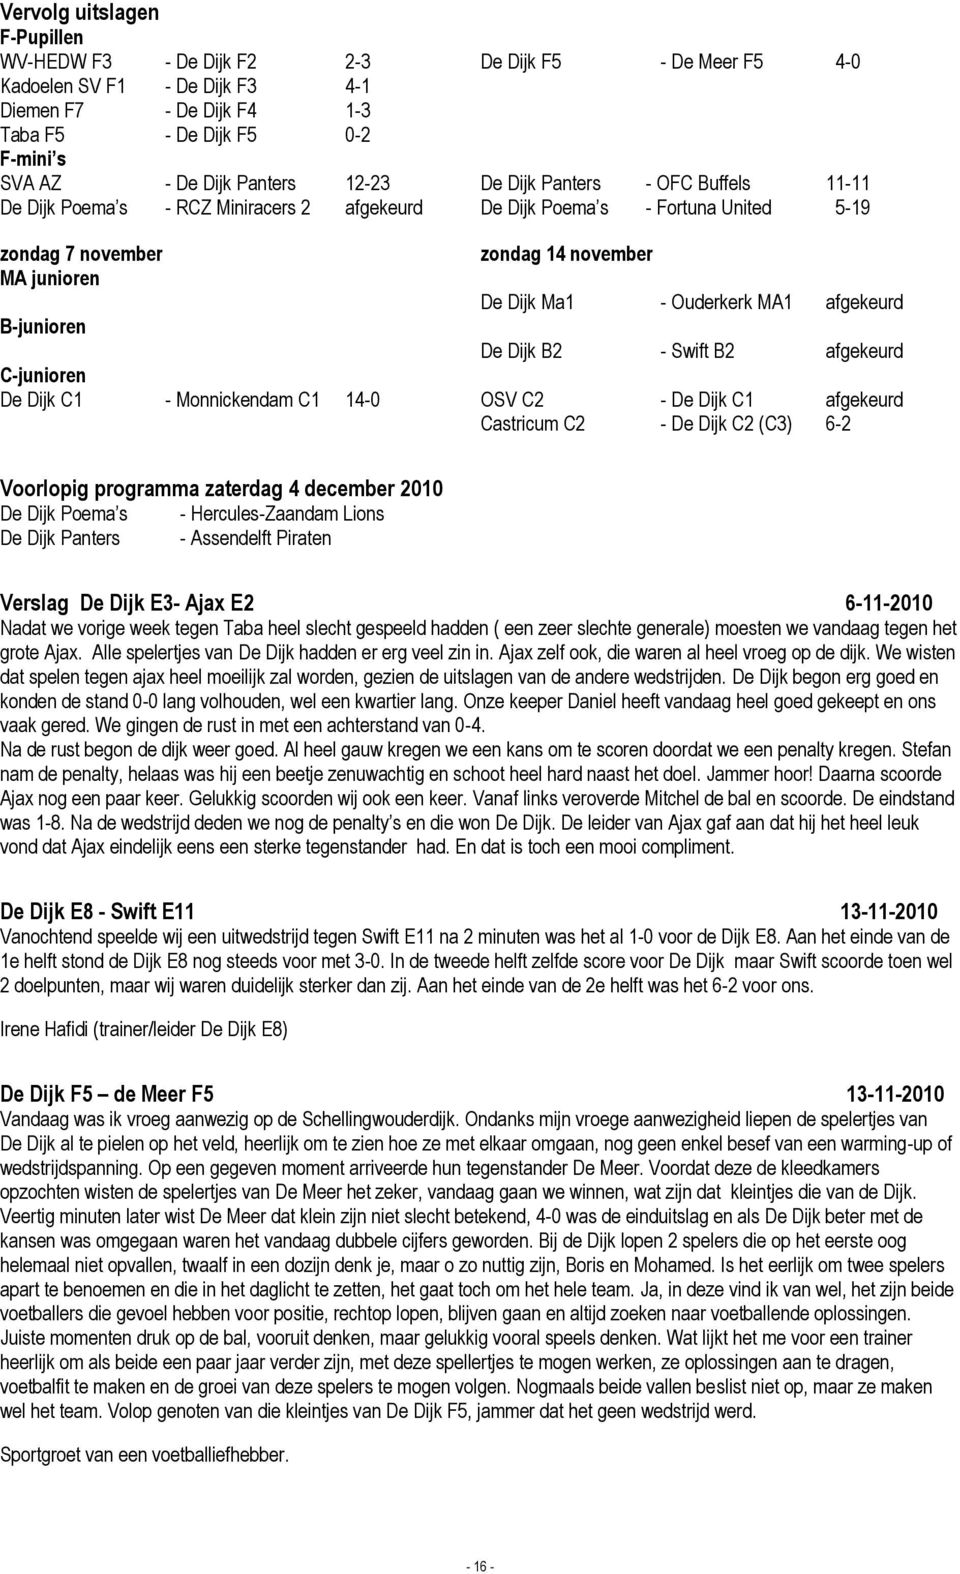 Ouderkerk MA1 afgekeurd B-junioren De Dijk B2 - Swift B2 afgekeurd C-junioren De Dijk C1 - Monnickendam C1 14-0 OSV C2 - De Dijk C1 afgekeurd Castricum C2 - De Dijk C2 (C3) 6-2 Voorlopig programma